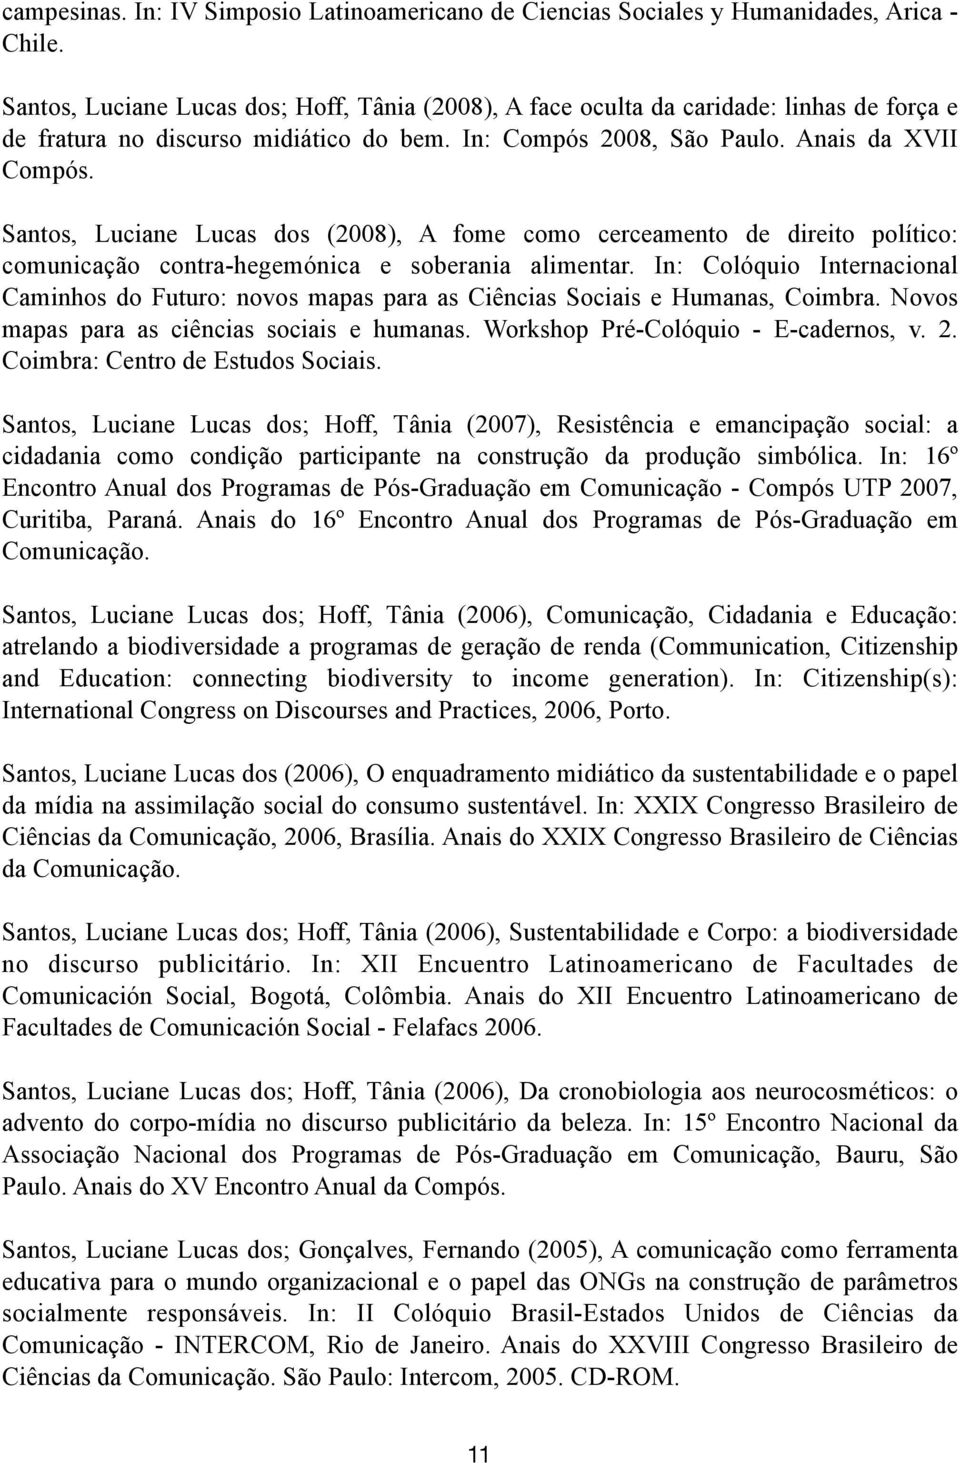 Santos, Luciane Lucas dos (2008), A fome como cerceamento de direito político: comunicação contra-hegemónica e soberania alimentar.